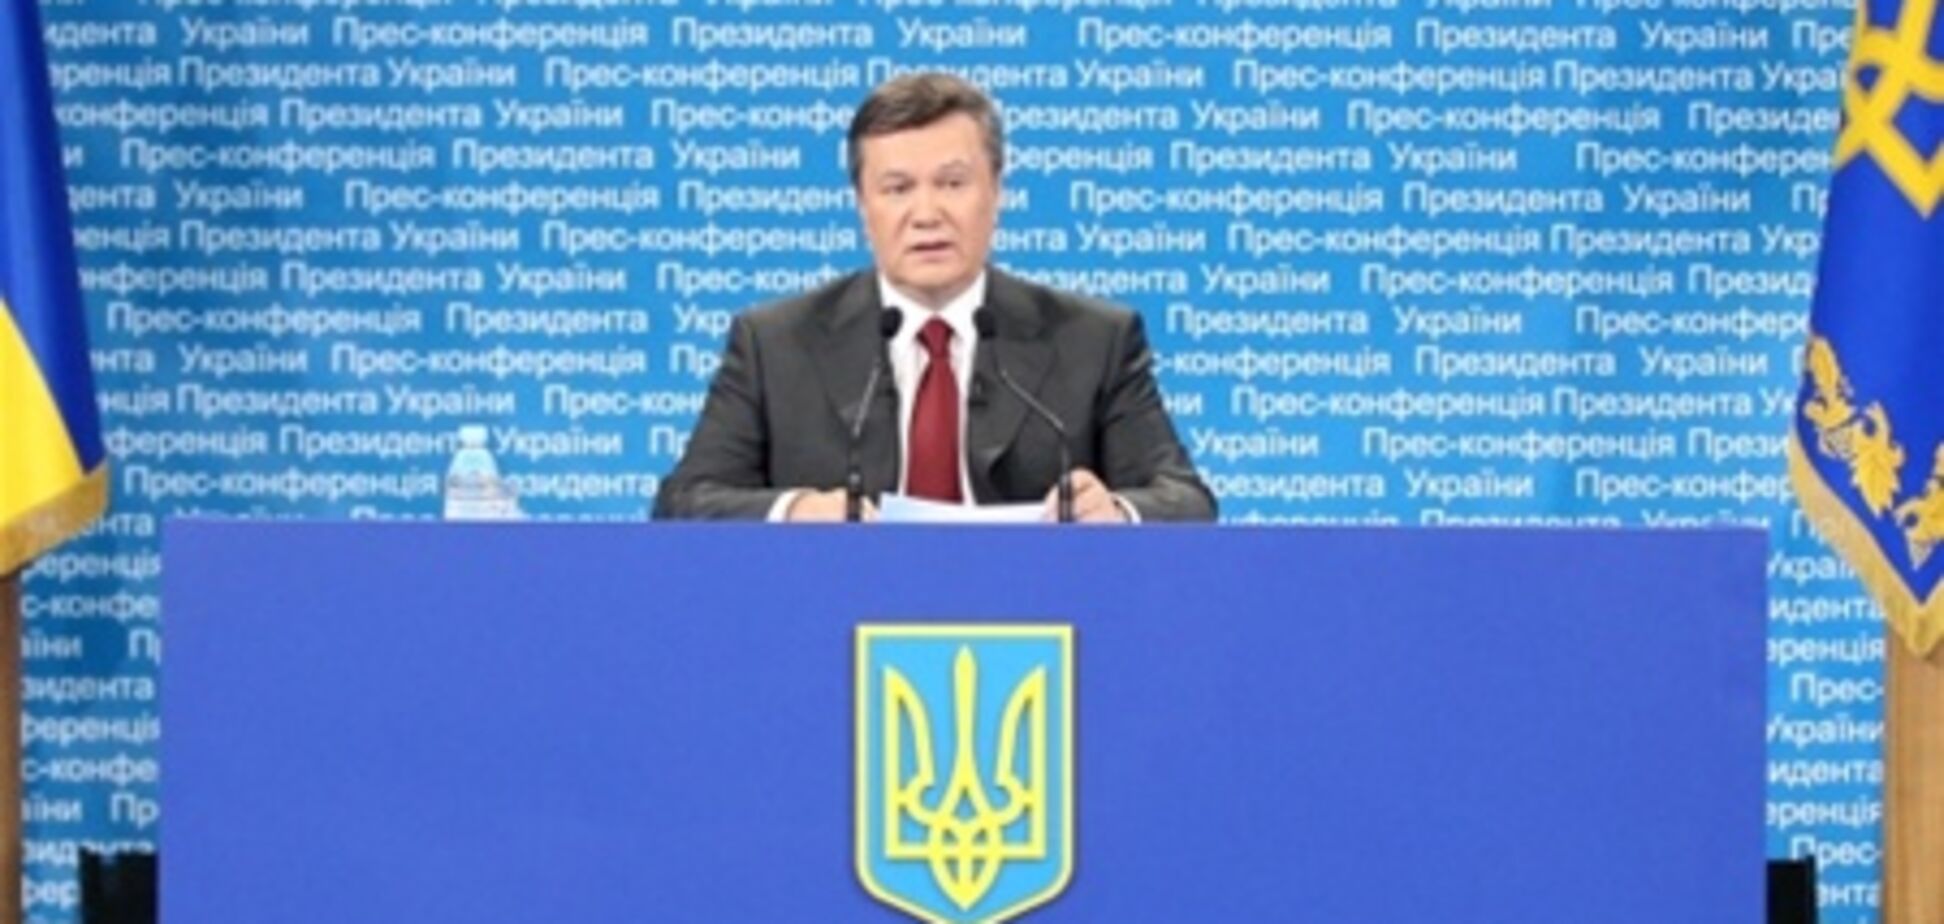 Янукович: имя Джарты навсегда останется в истории современной Украины